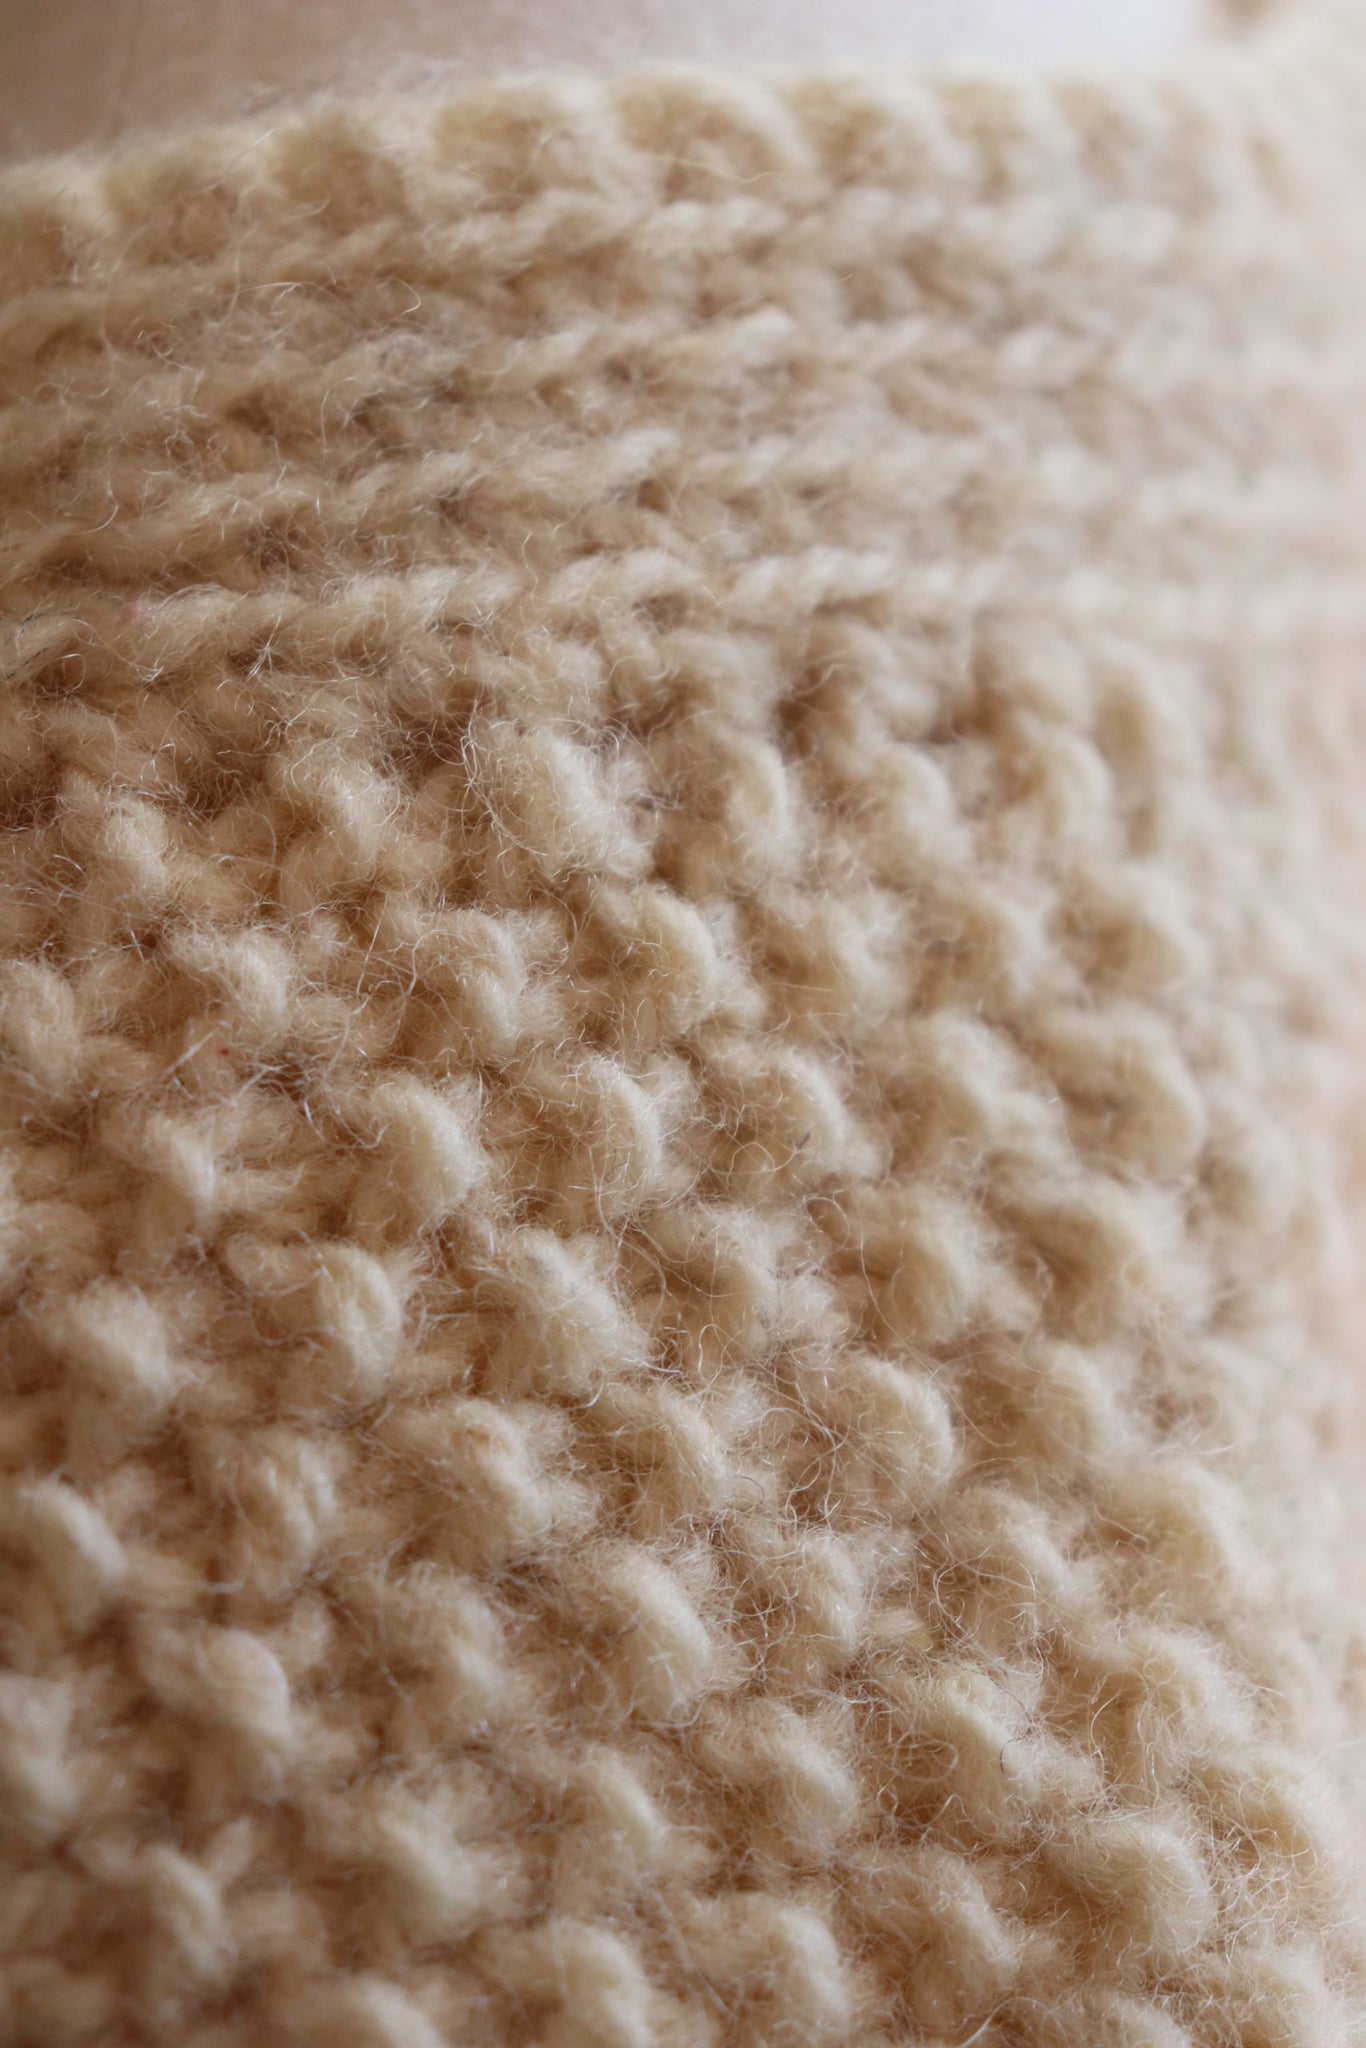 80s Hand Knit Aran Wool Vest